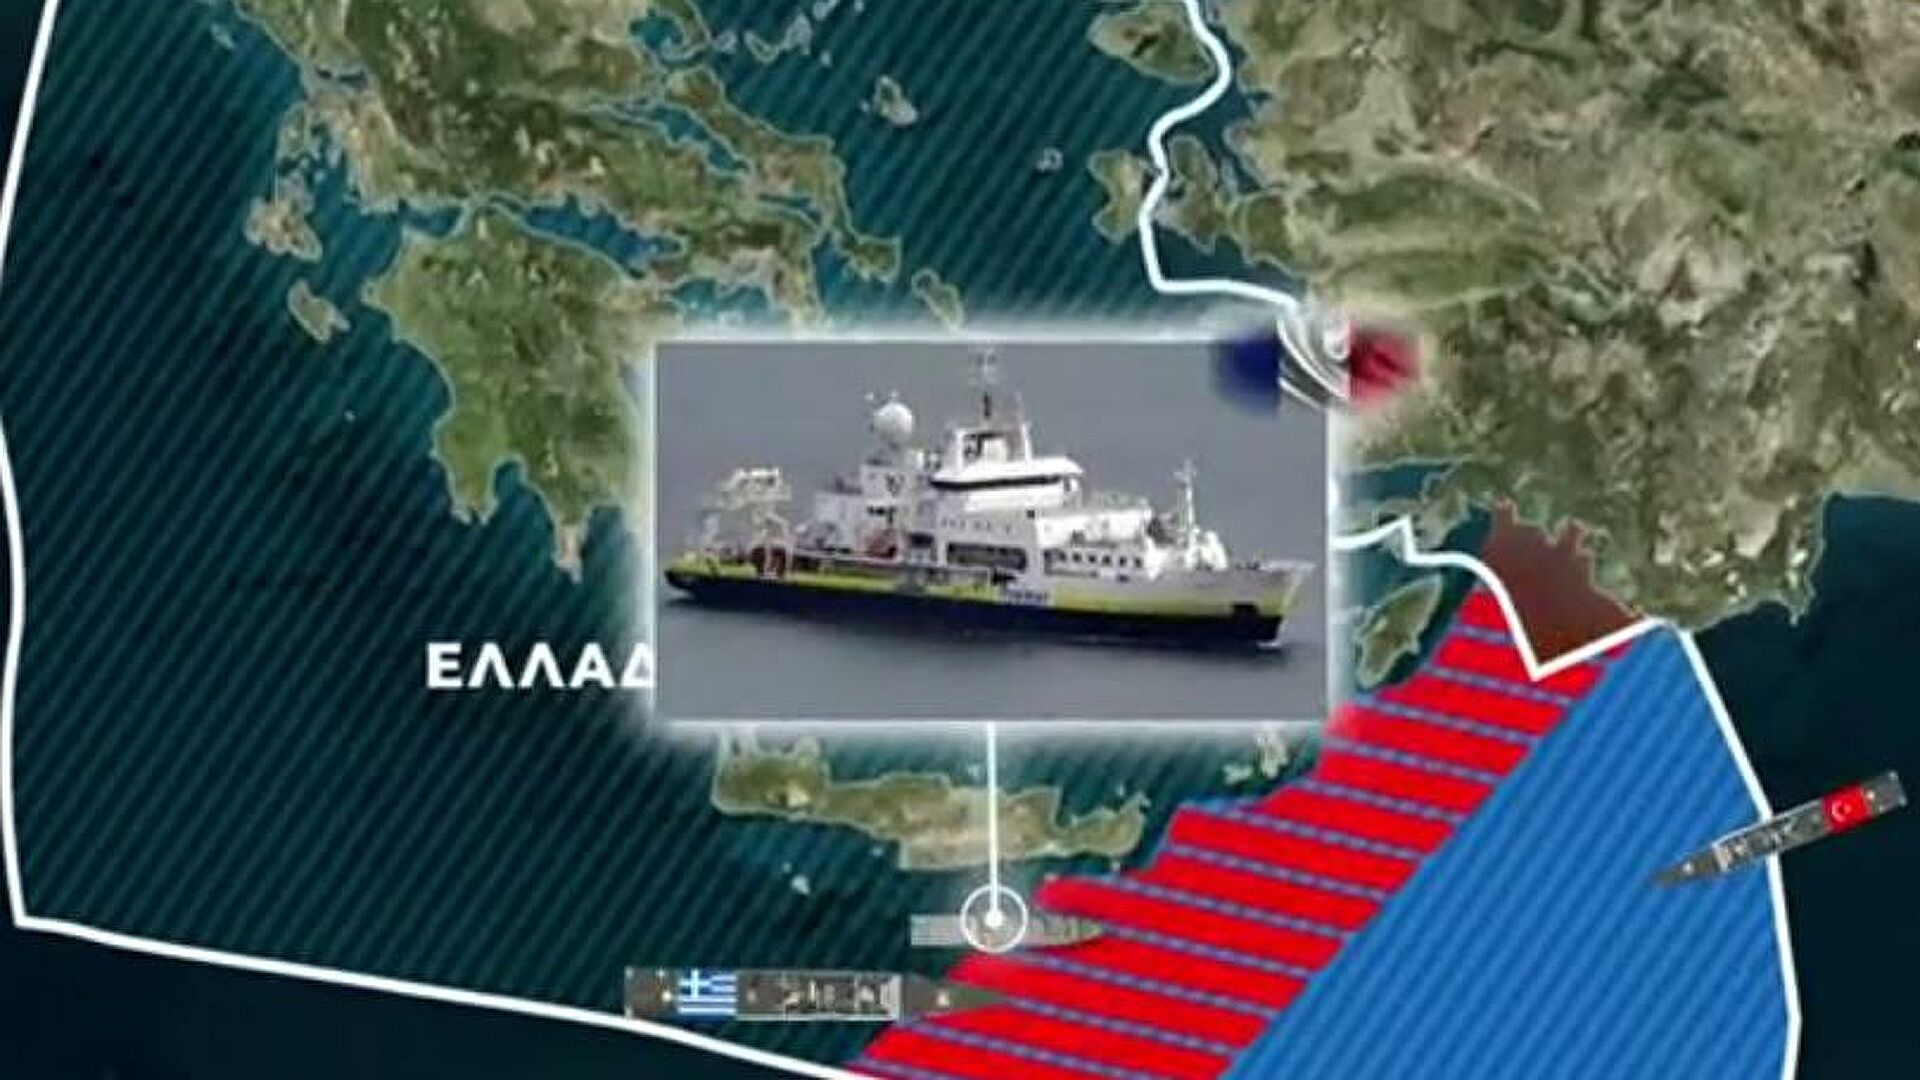 Πρέπει να δοθούν απαντήσεις για την παρενόχληση του γαλλικού πλοίου μέσα στην ελληνική ΑΟΖ